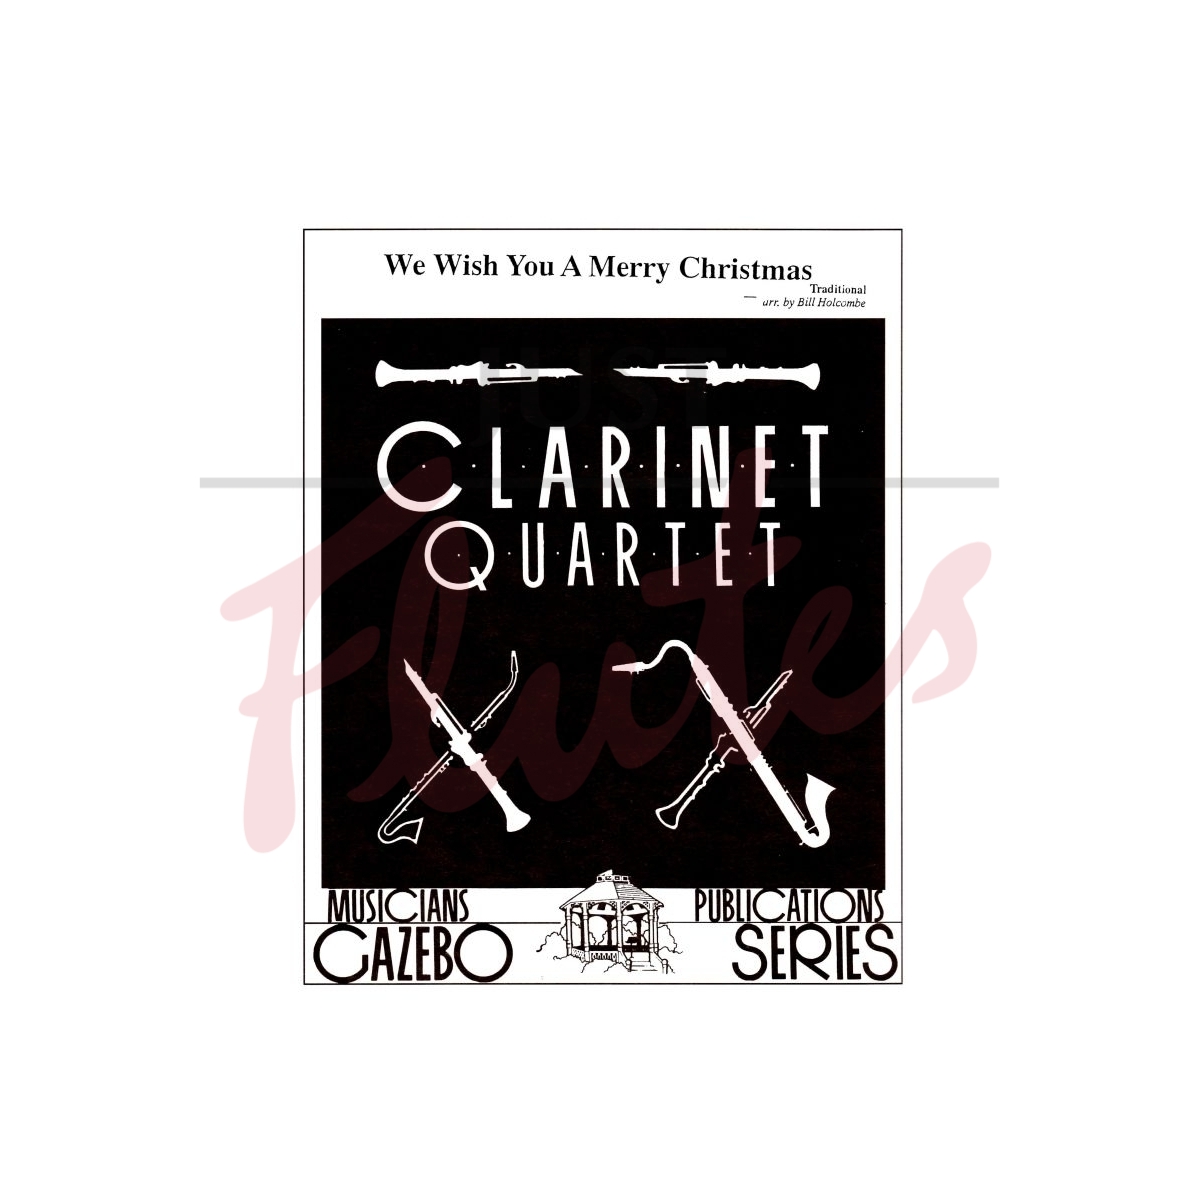 We Wish You A Merry Christmas [Clarinet Quartet]